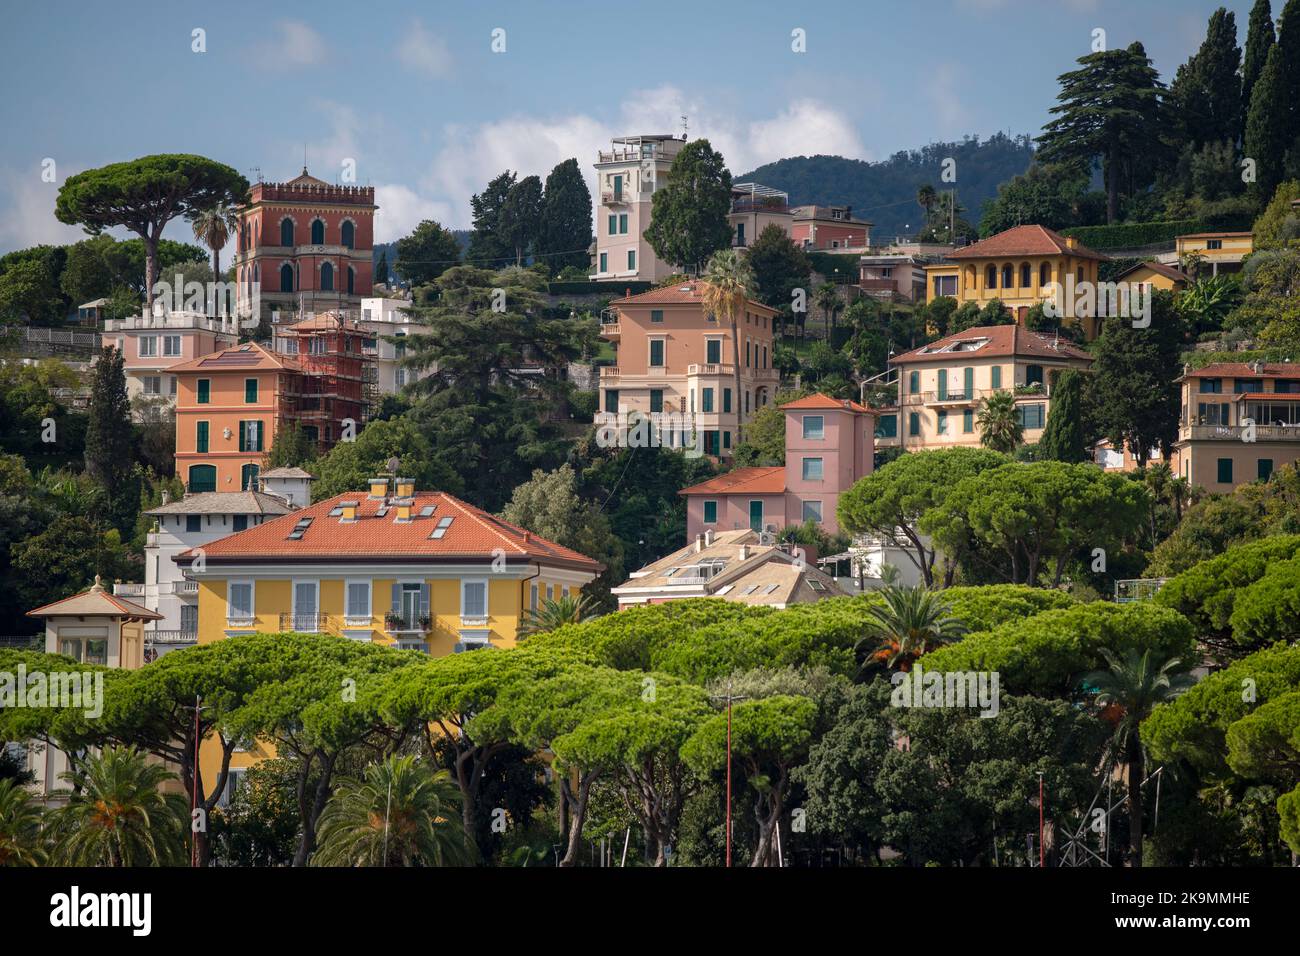 Santa Margherita Ligure es una localidad y comune italiana de la ciudad metropolitana de Génova, región de Liguria, con 35 habitantes 22 Foto de stock